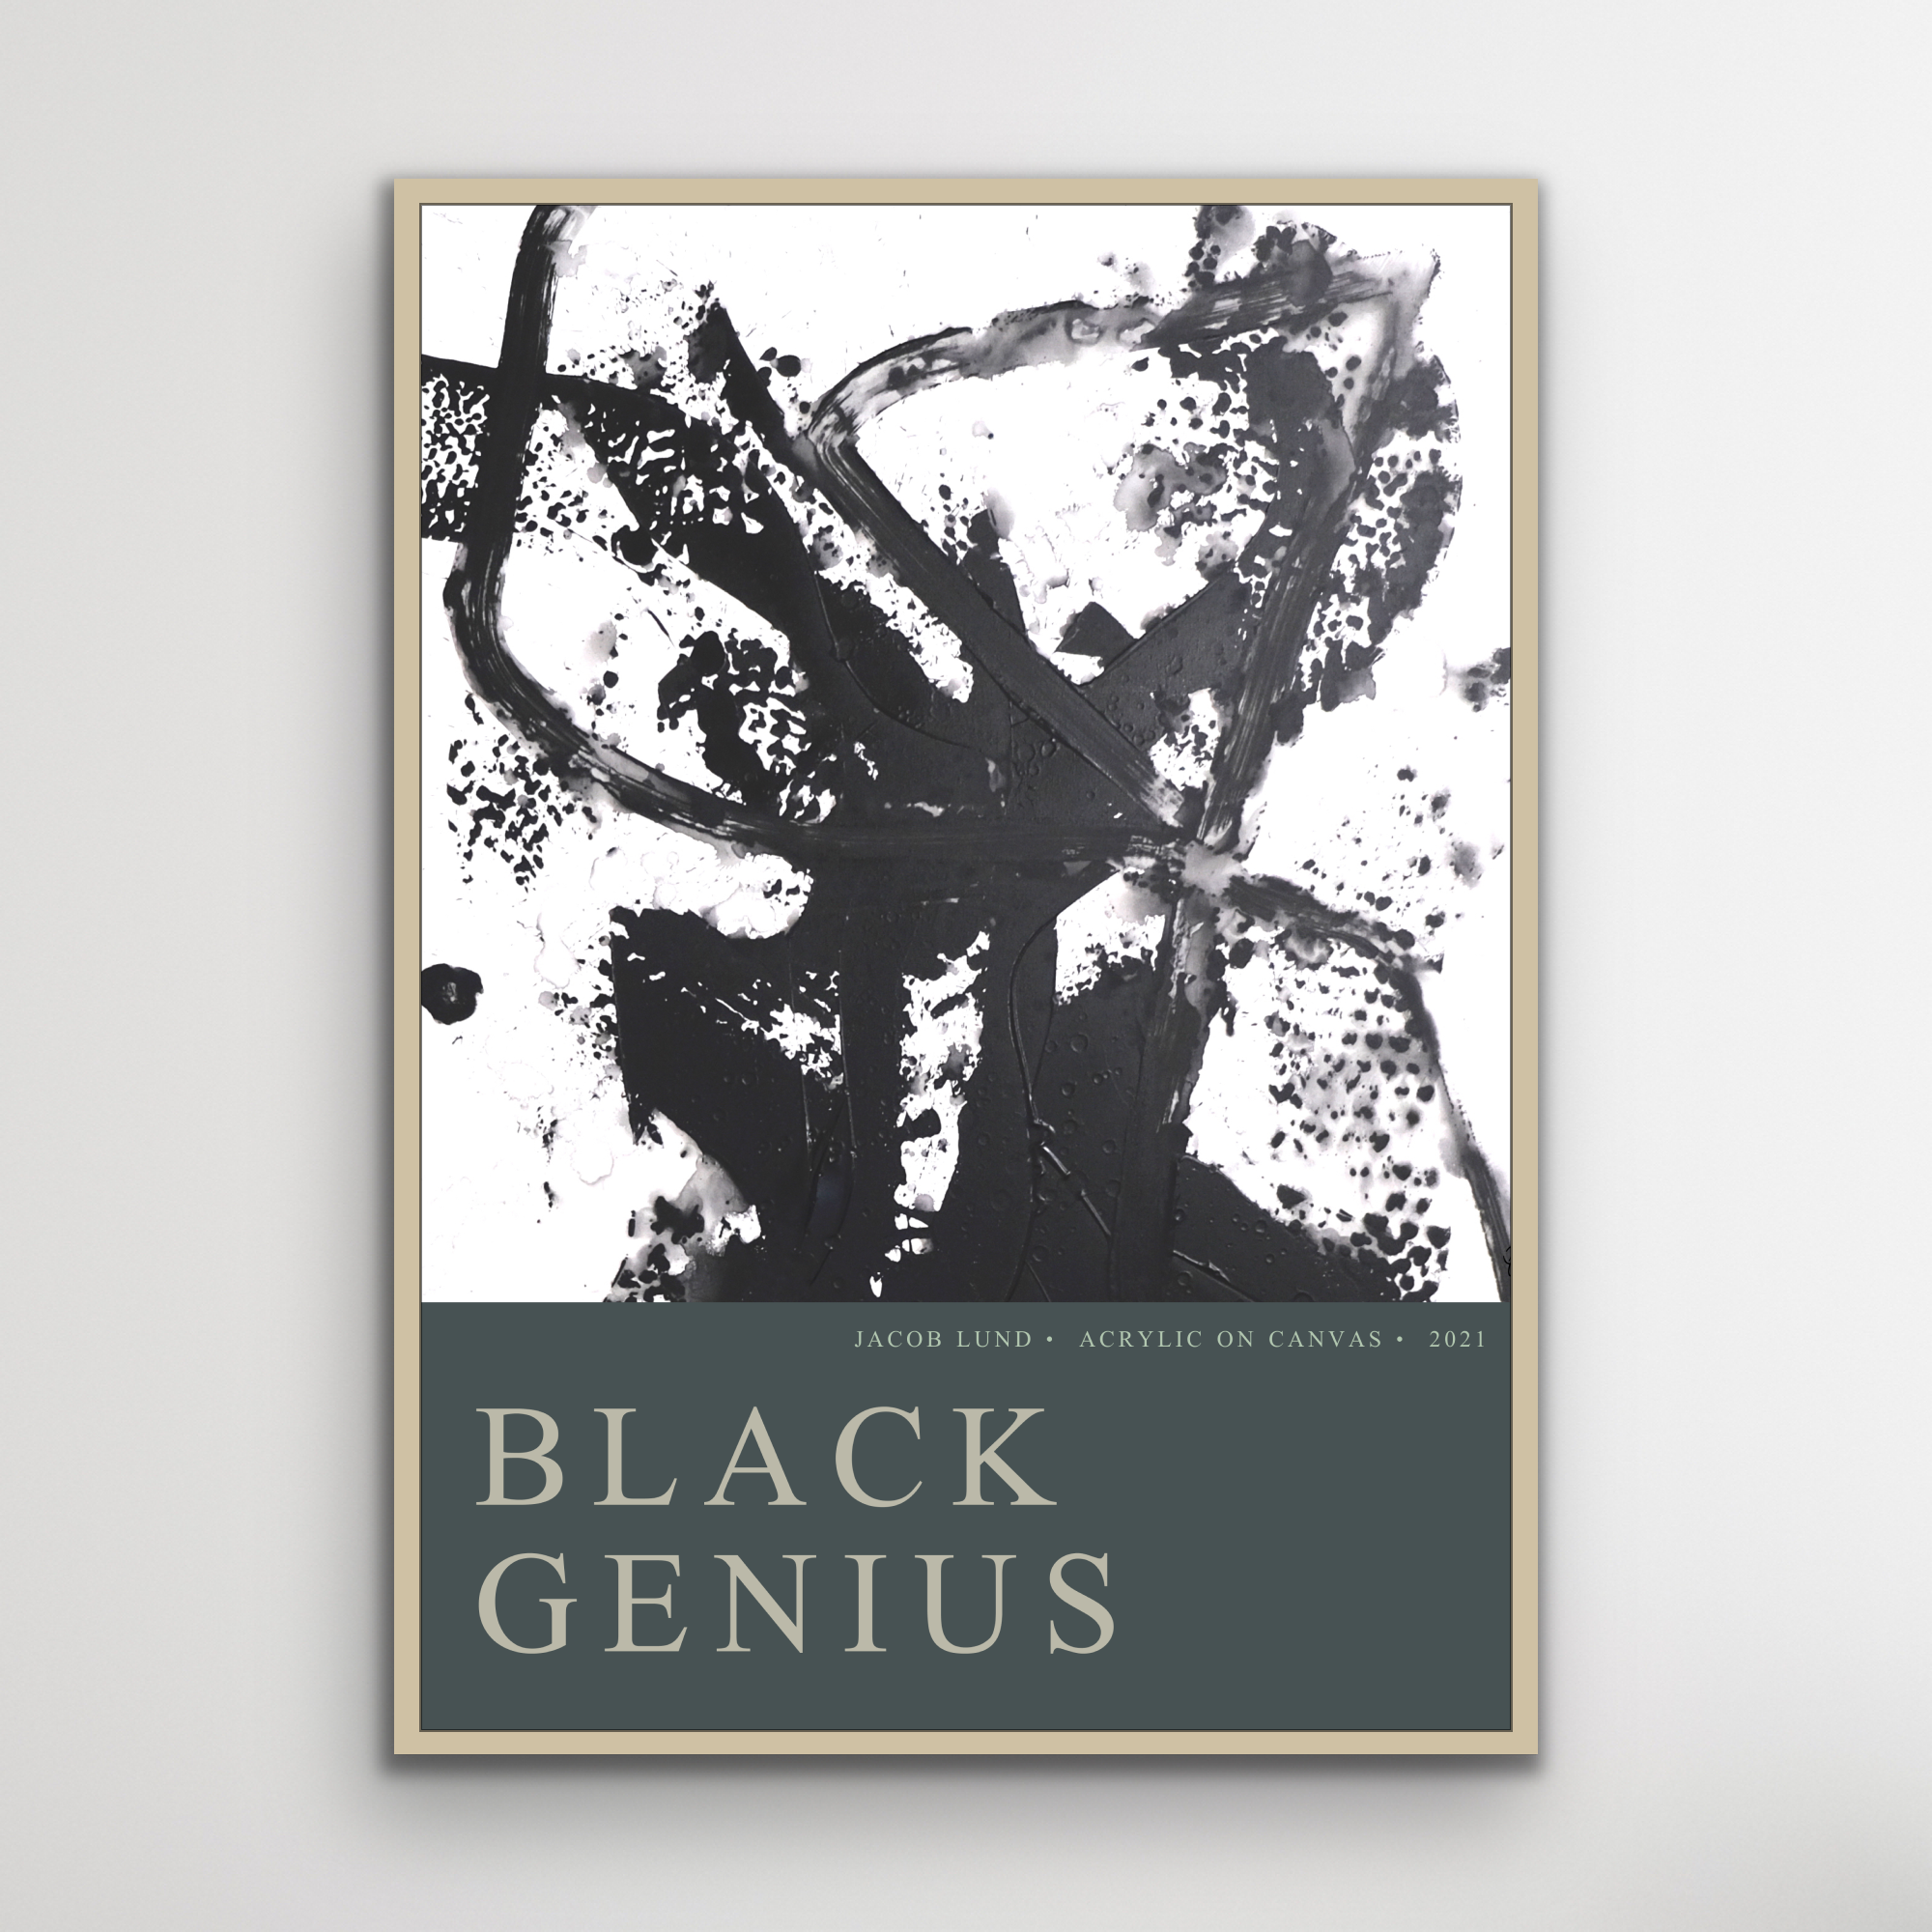 Plakat: "Black Genius"